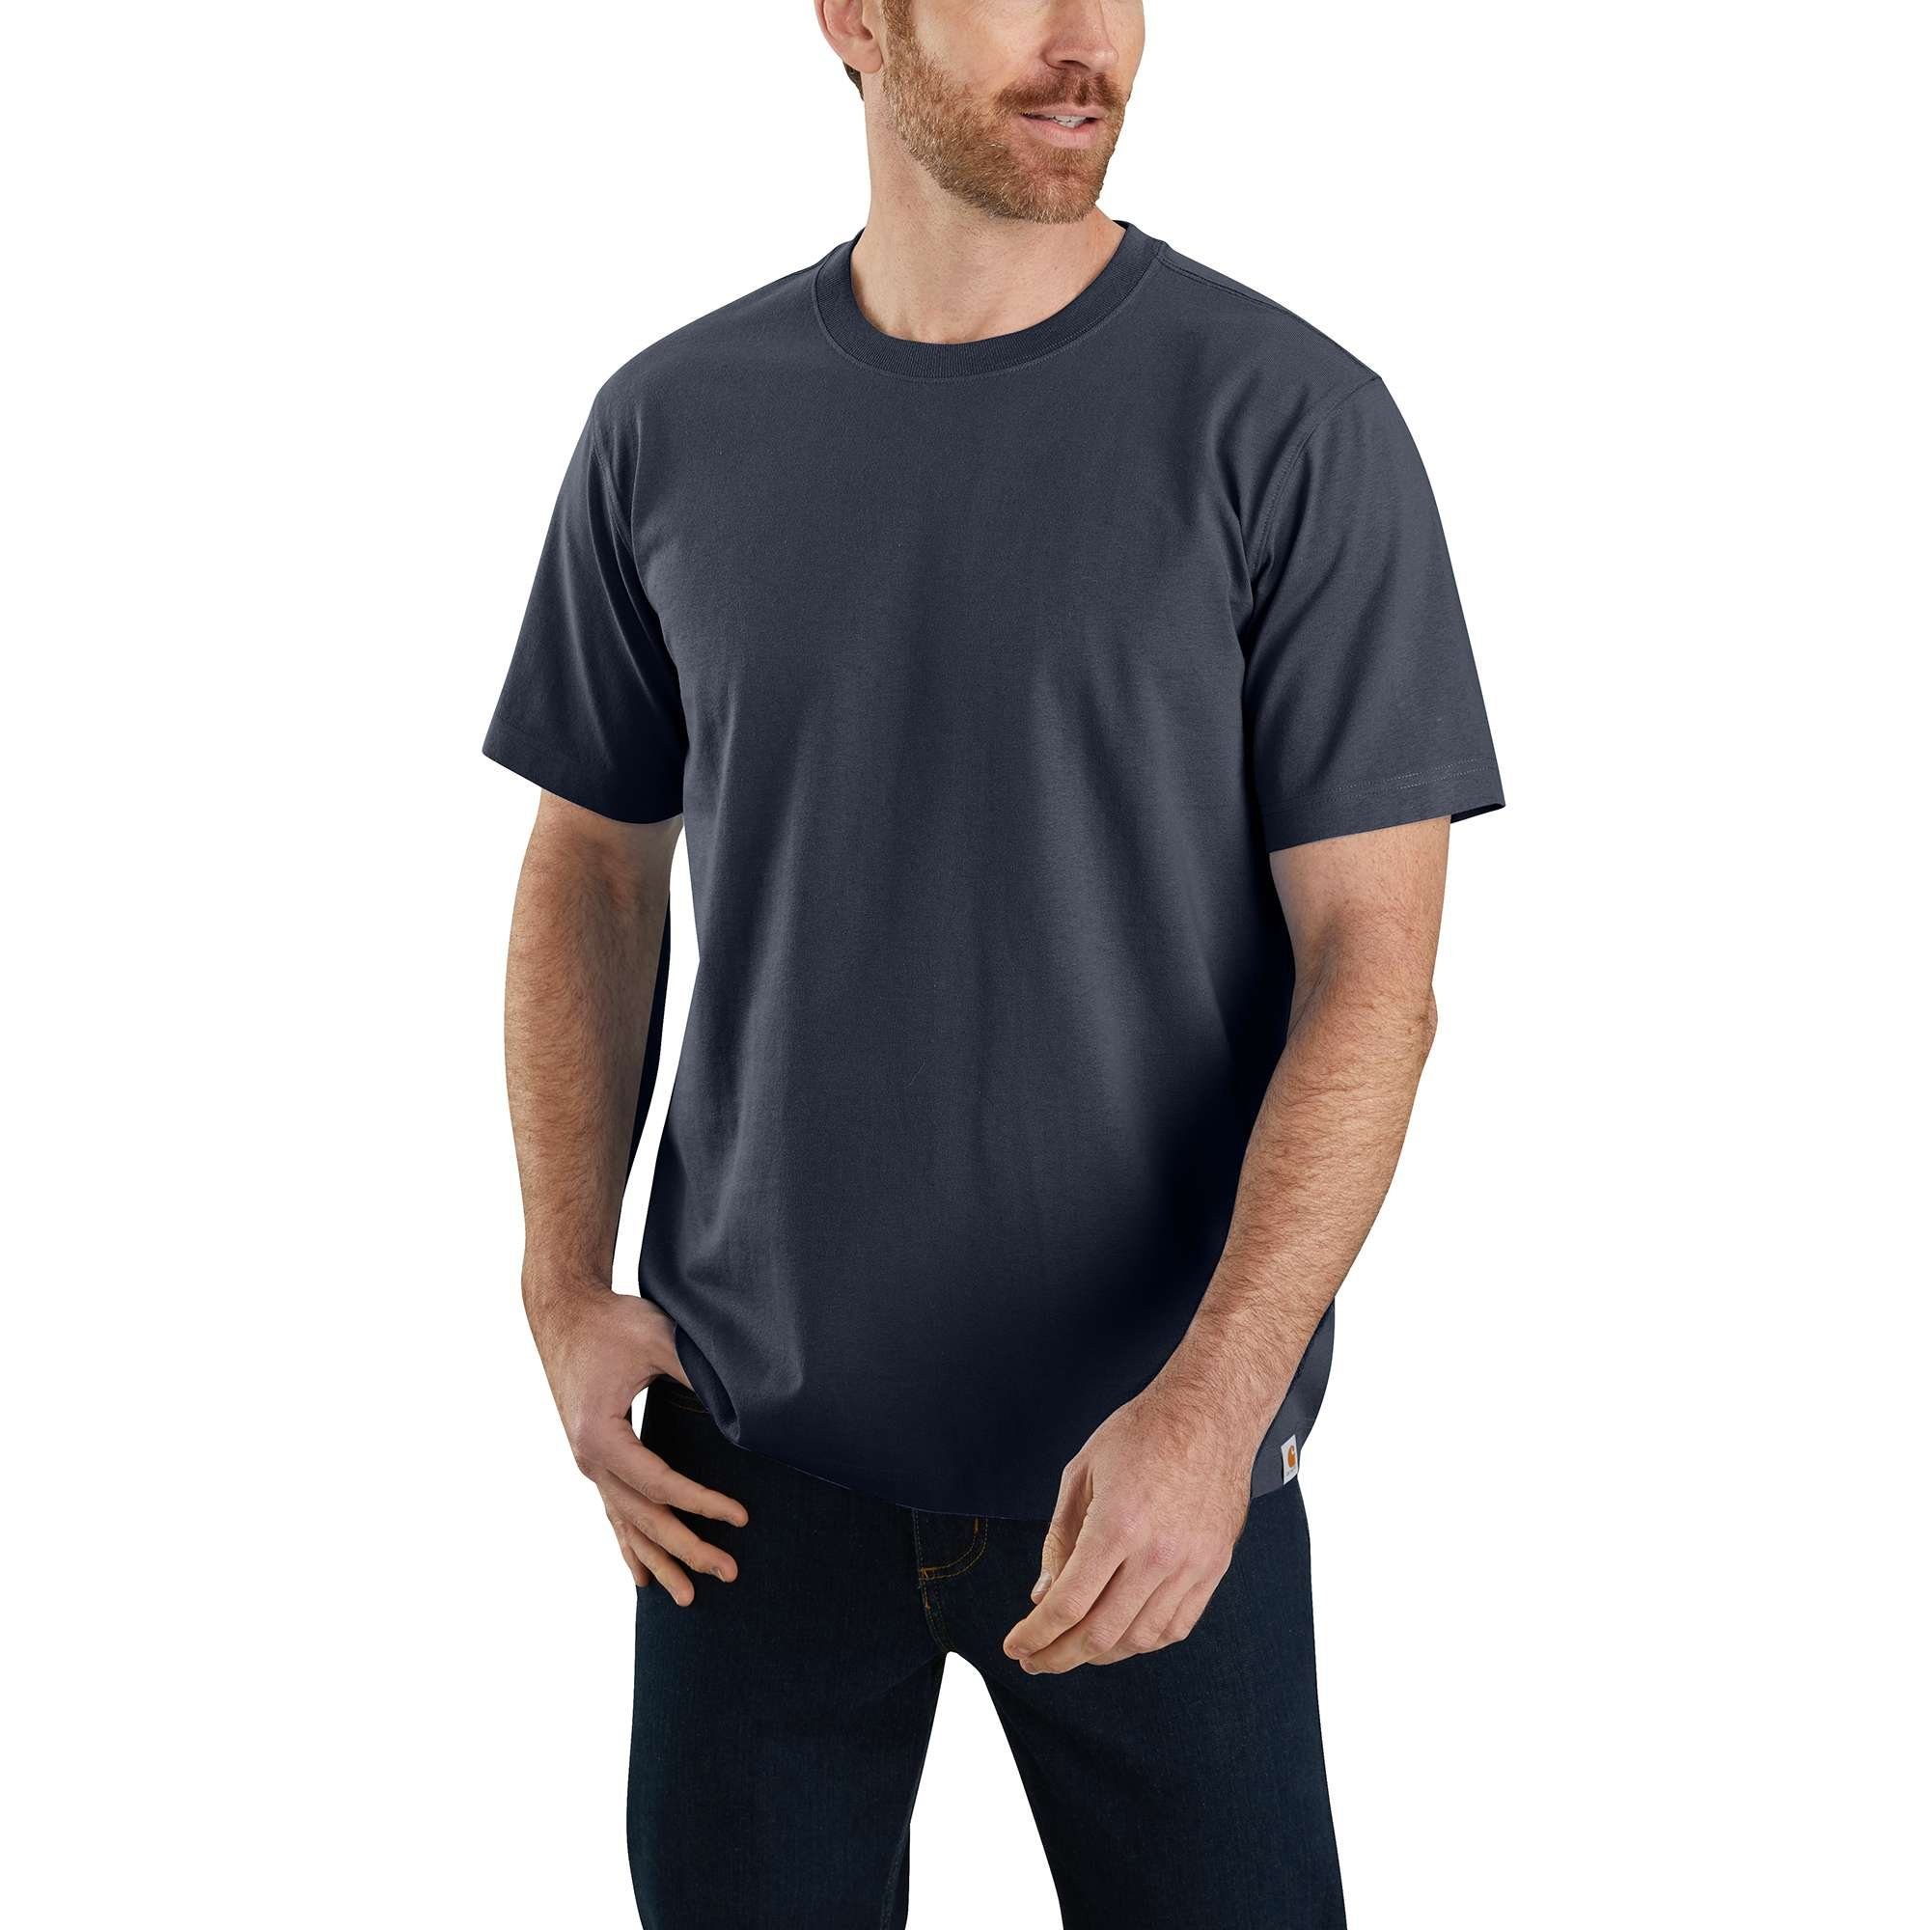 T-Shirt Relaxed Short-Sleeve Heavyweight Carhartt Adult navy Carhartt Herren T-Shirt Fit